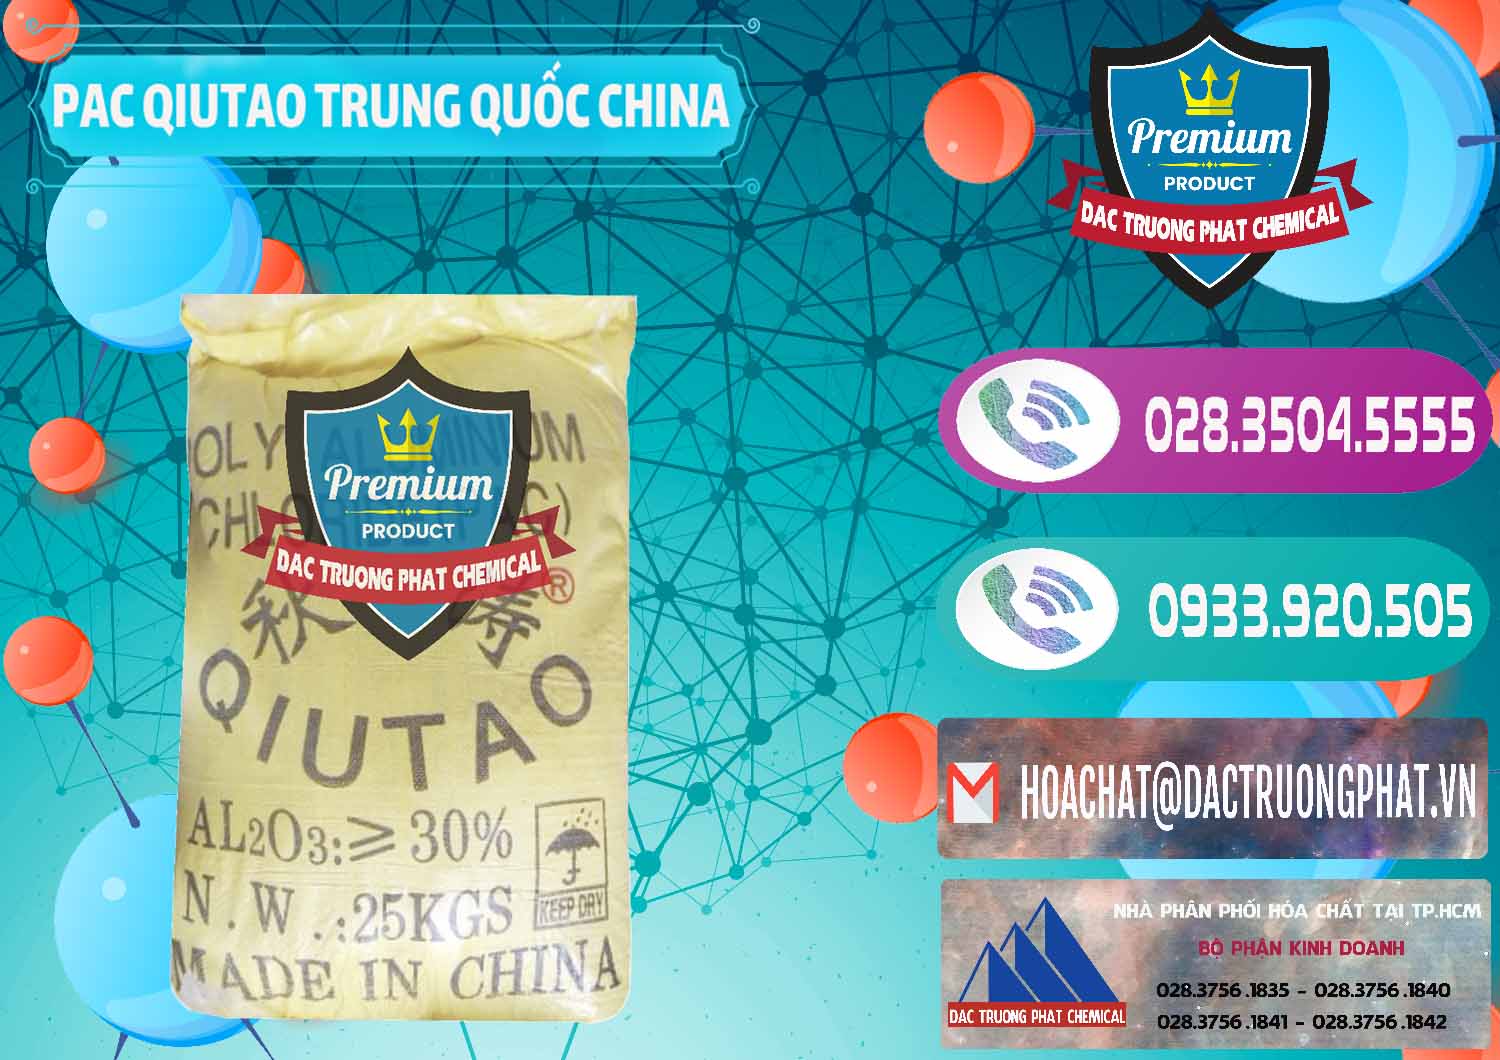 Nơi chuyên bán ( cung ứng ) PAC - Polyaluminium Chloride Qiutao Trung Quốc China - 0267 - Công ty chuyên bán ( cung cấp ) hóa chất tại TP.HCM - hoachatxulynuoc.com